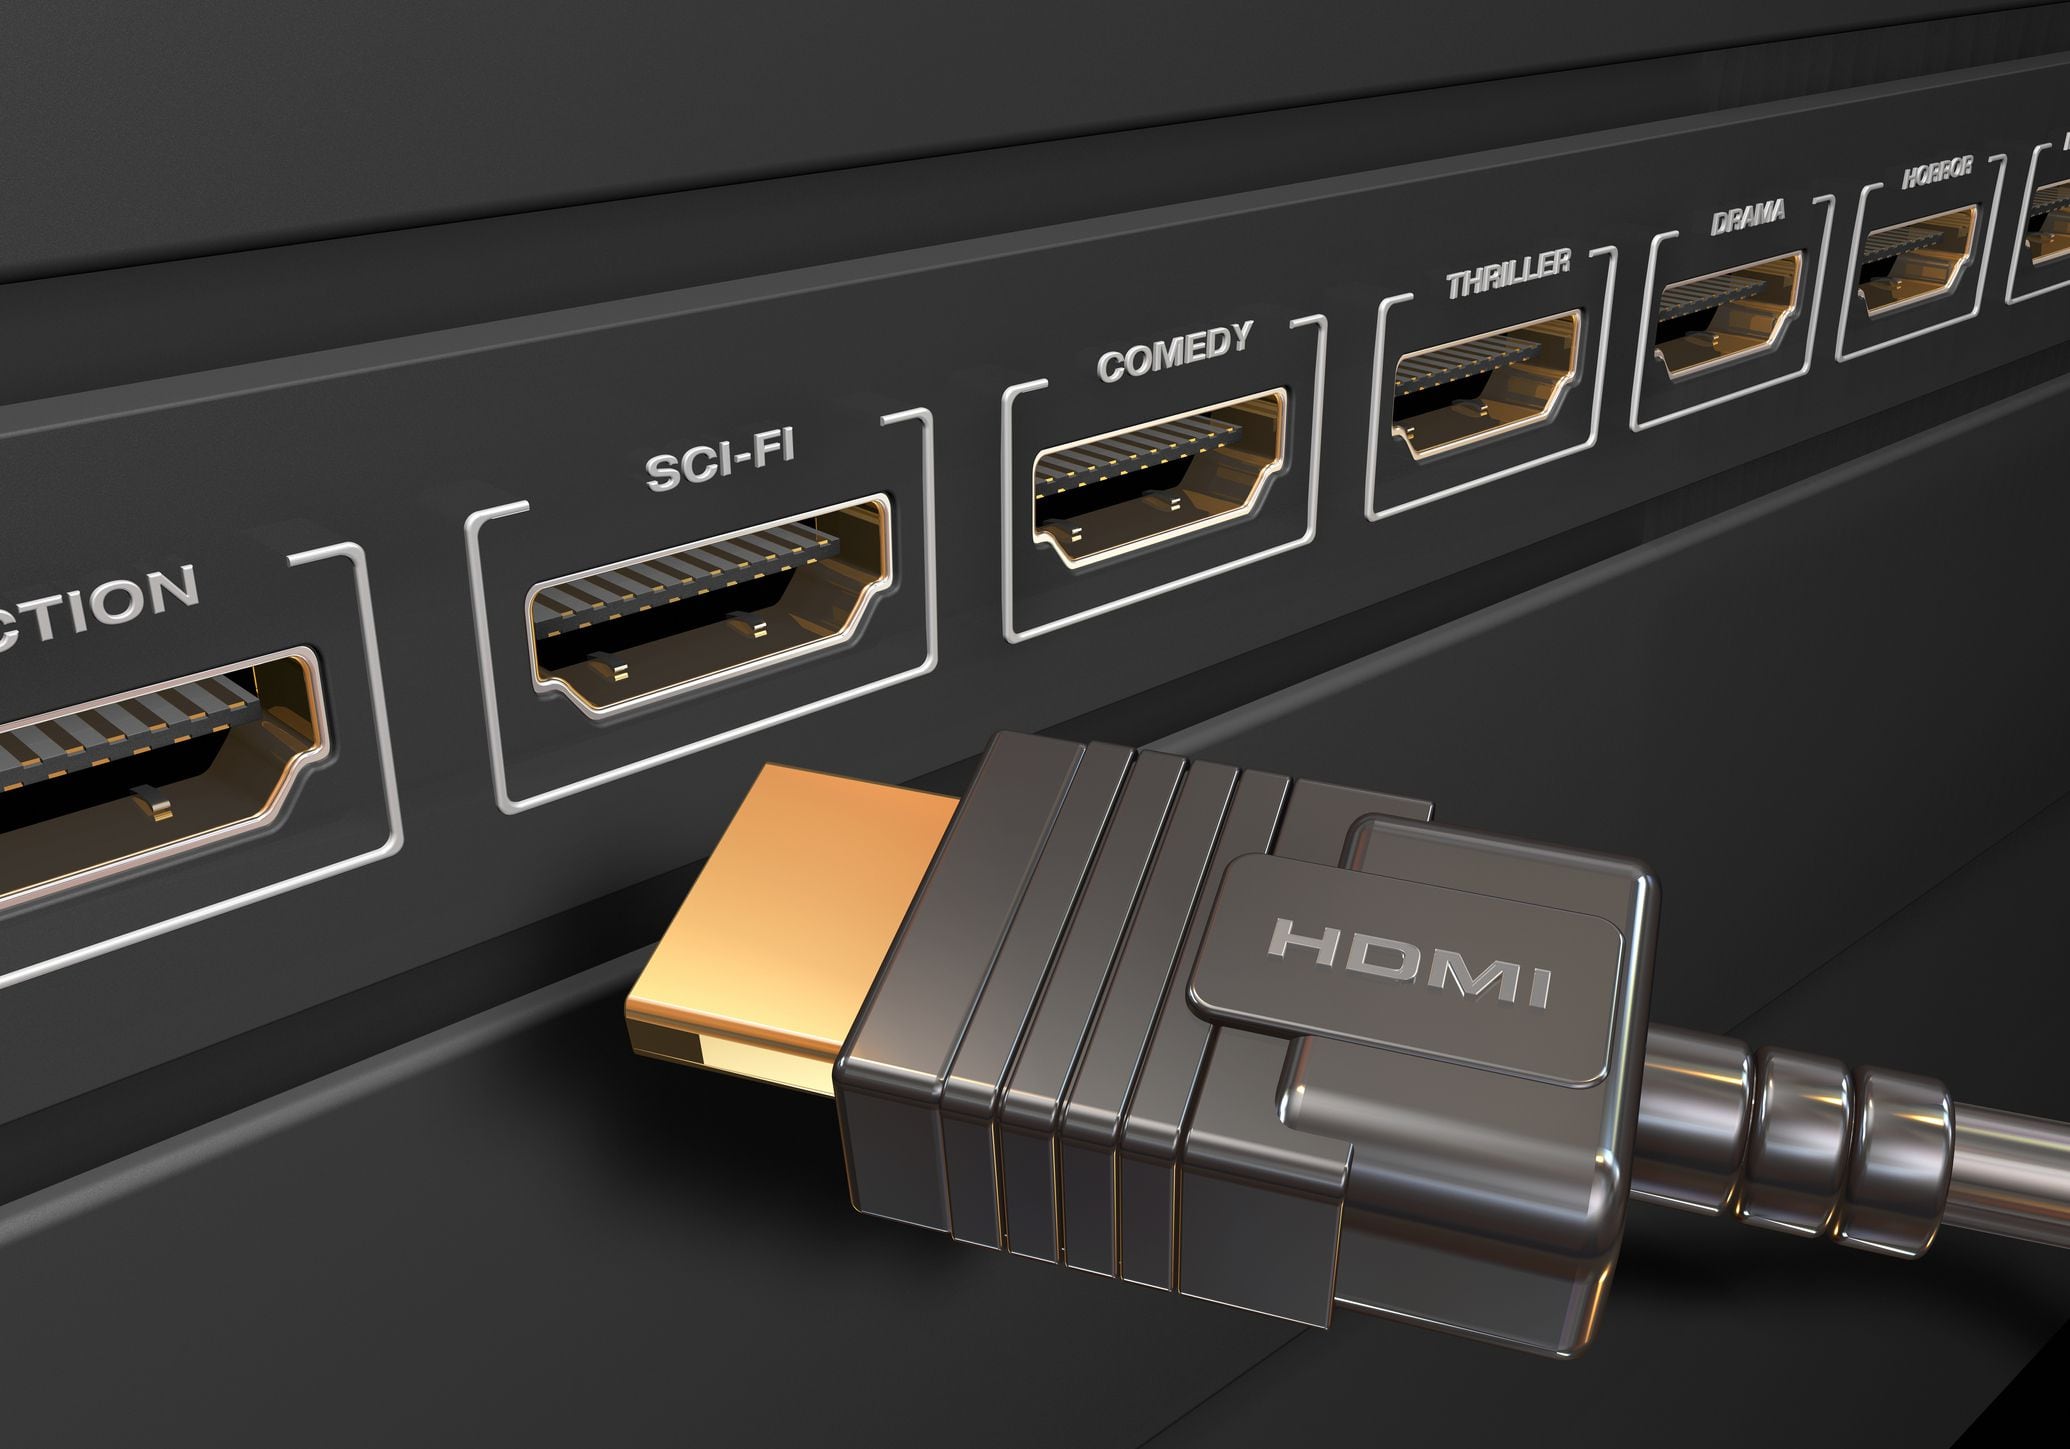 Su televisor oculta esta conexión HDMI especial, ¿Para qué sirve y cómo  sacarle provecho?